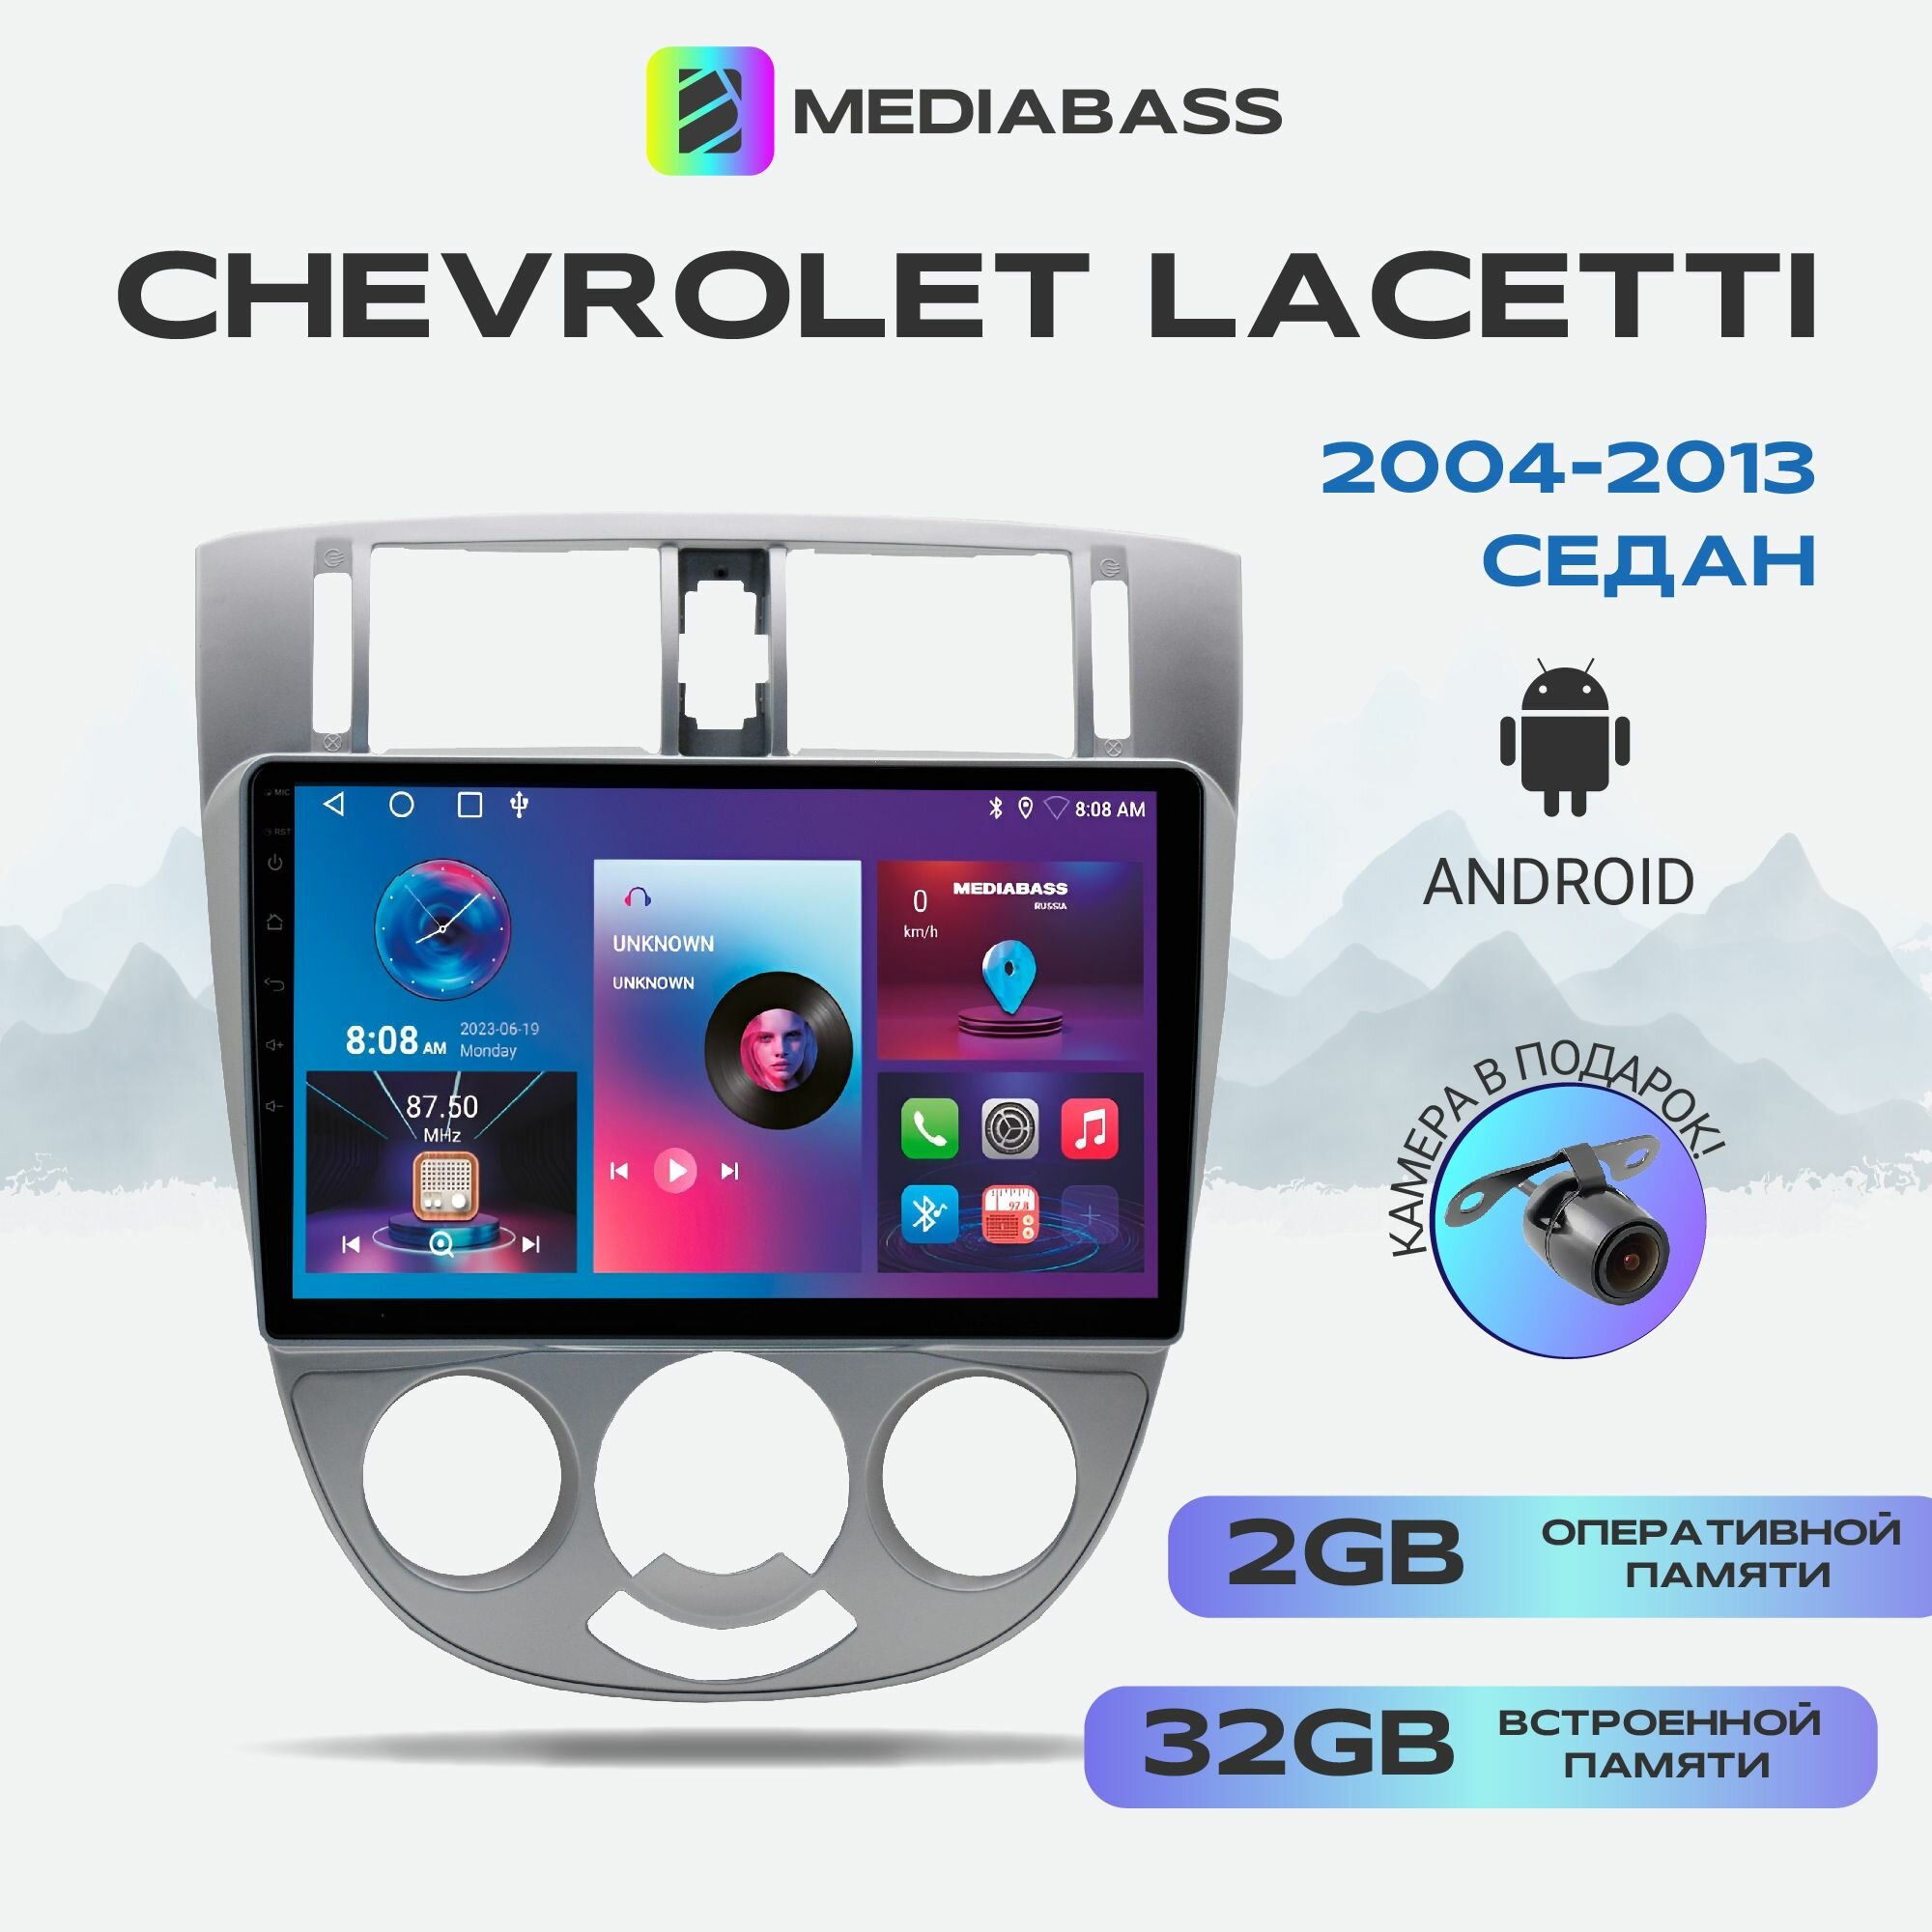 Штатная магнитола Chevrolet Lacetti седан, 2/32ГБ, 4-ядерный процессор, QLED экран с разрешением 1280*720, чип-усилитель YD7388, Android 12 / Шевроле Лачетти седан